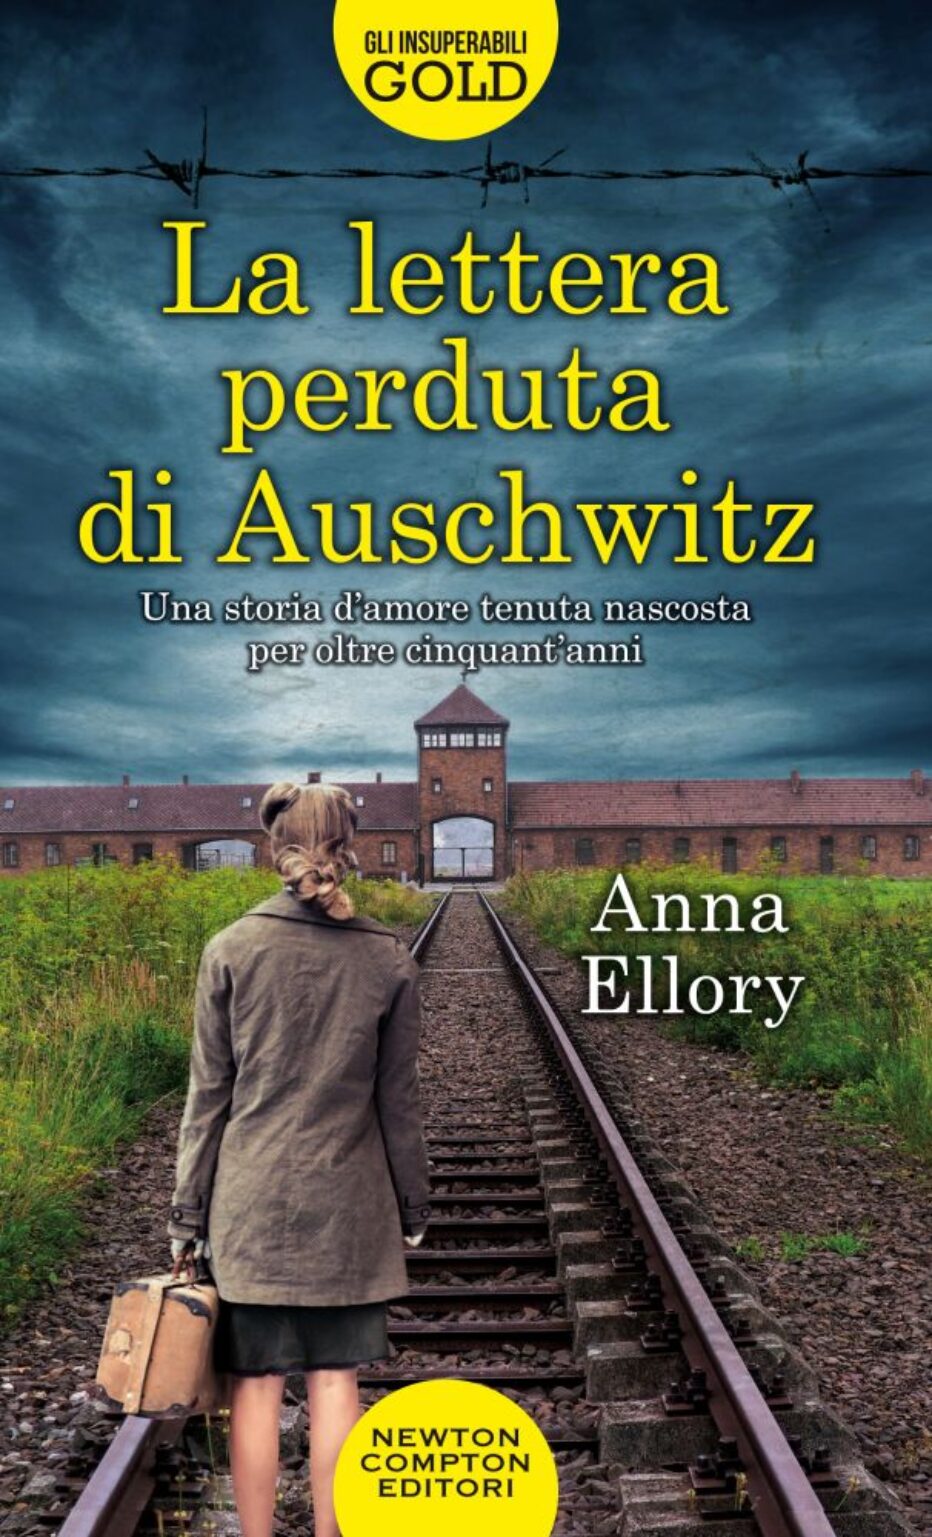 “La lettera perduta di Auschwitz”: la parola ai lettori